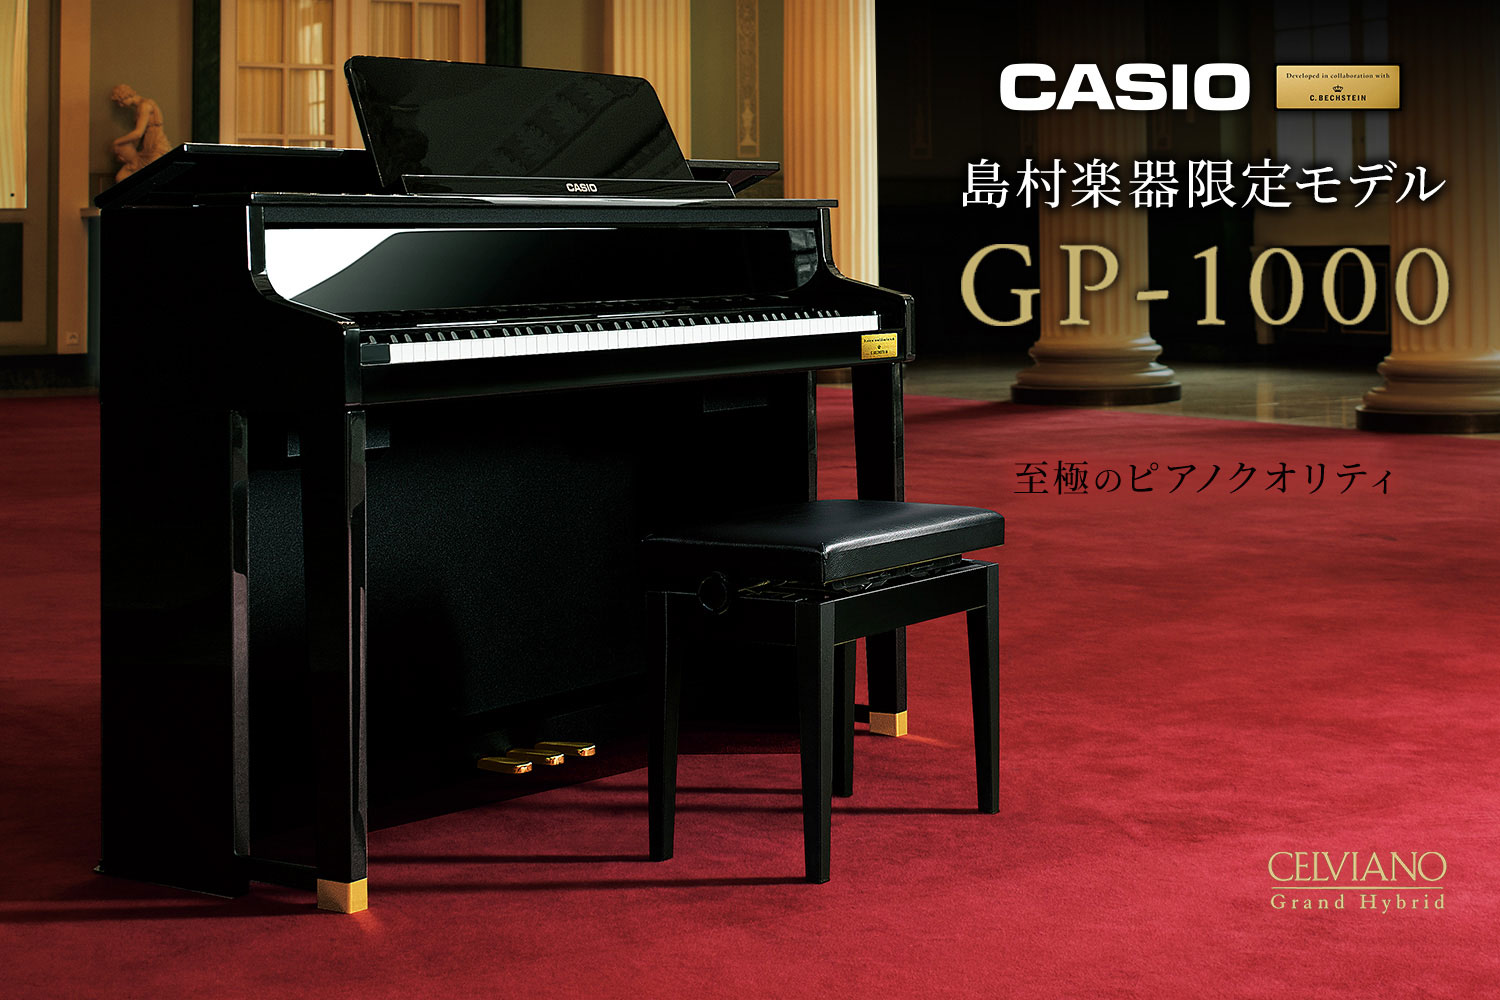 CASIO×C.ベヒシュタイン コラボレーション電子ピアノに島村楽器限定モデル「GP-1000」が新登場！